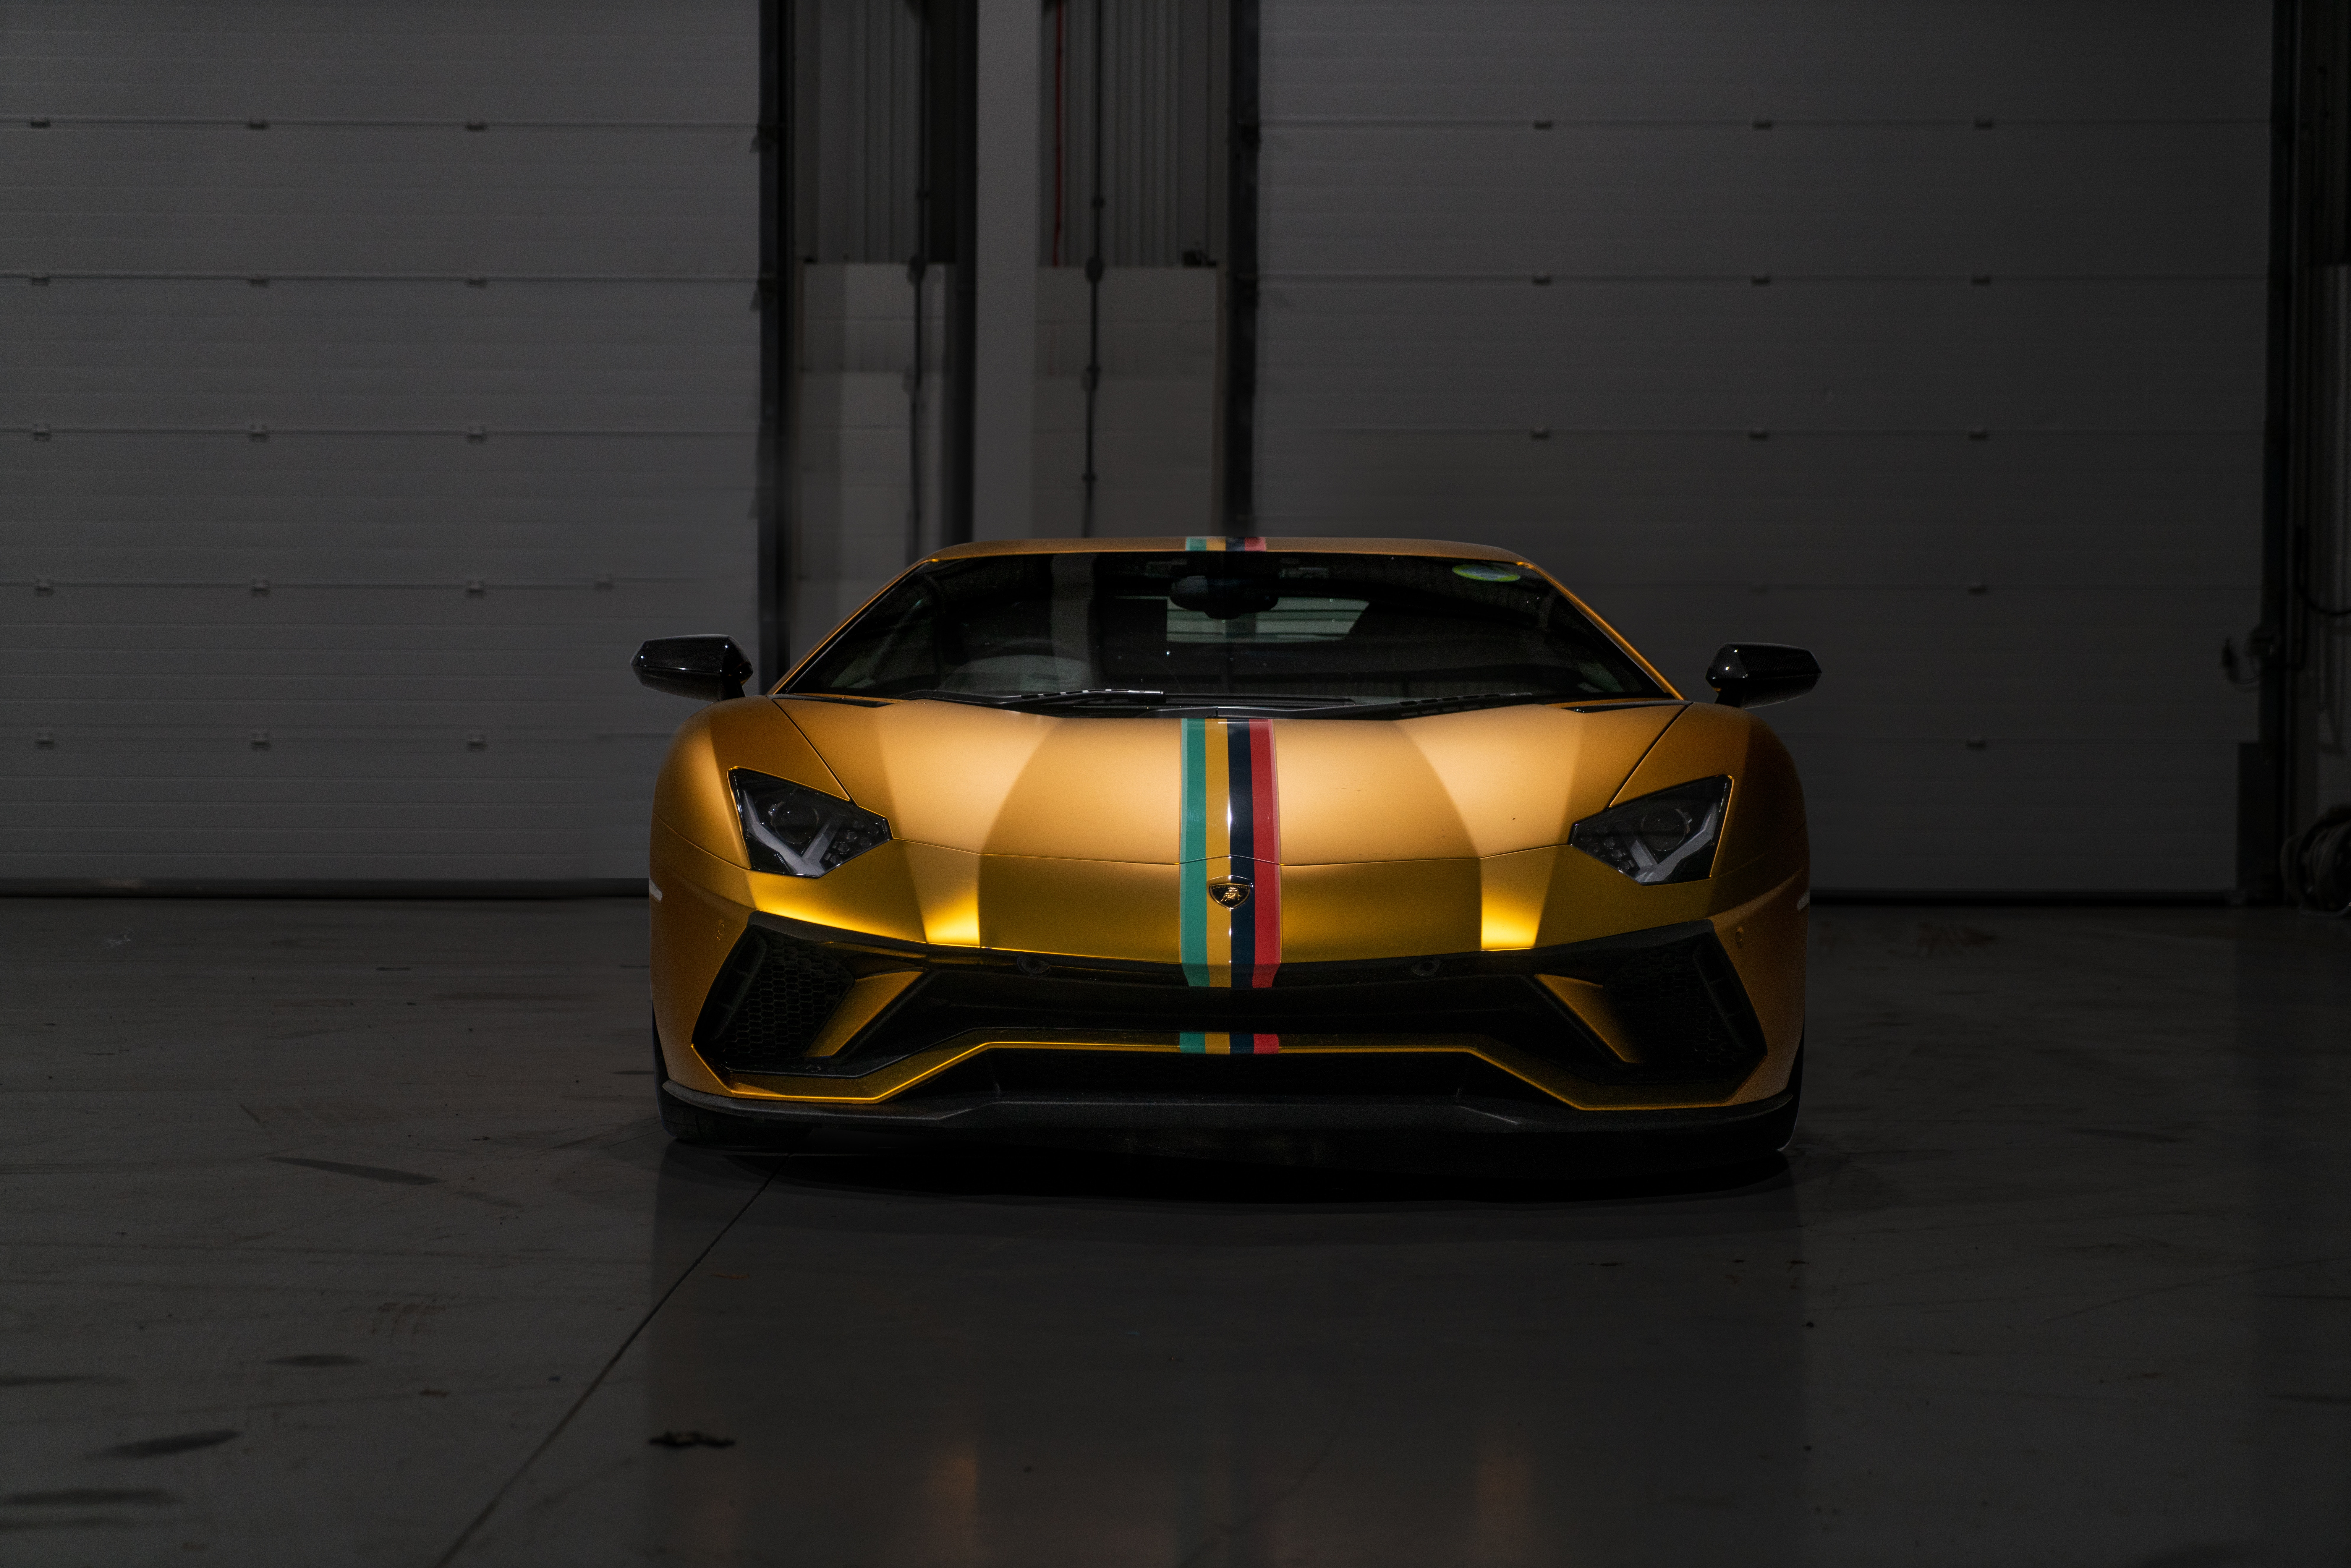 Descargar fondos de escritorio de Lamborghini Aventador HD